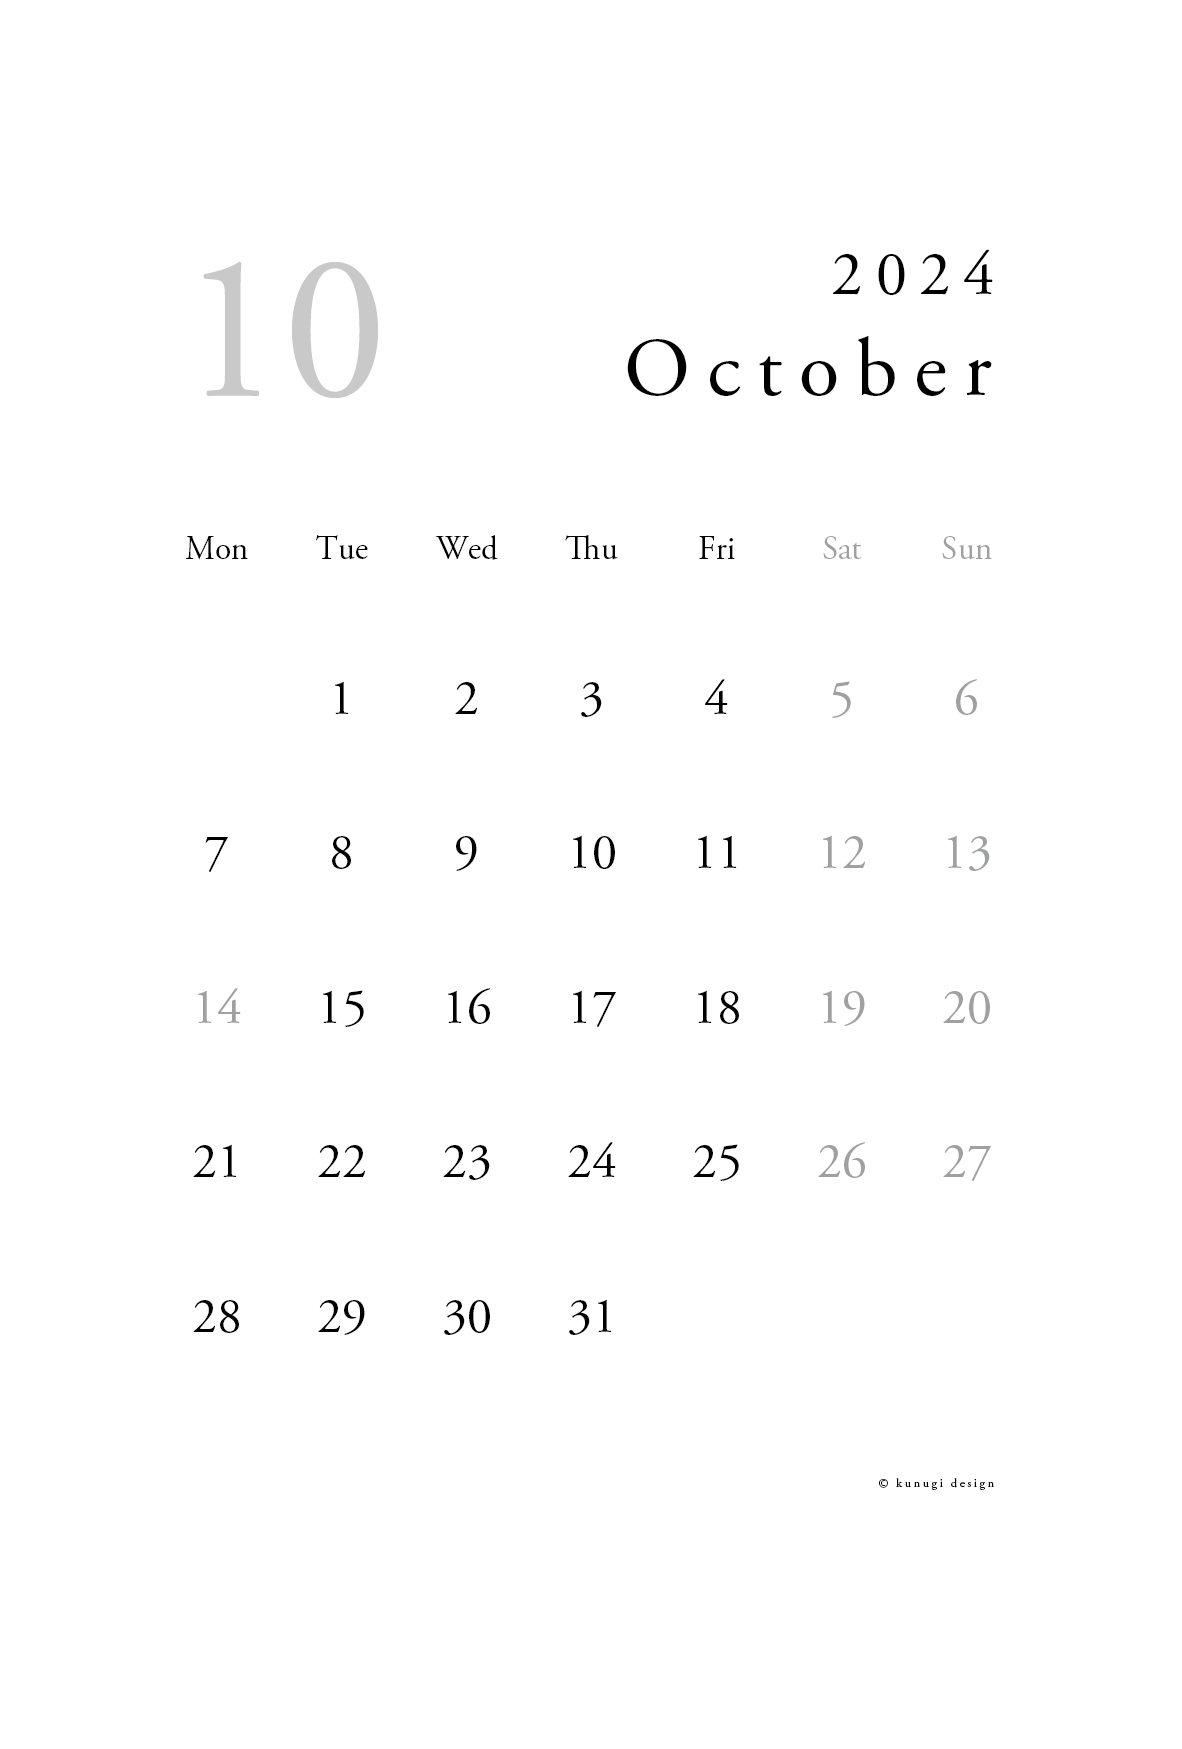 2024年10月カレンダー